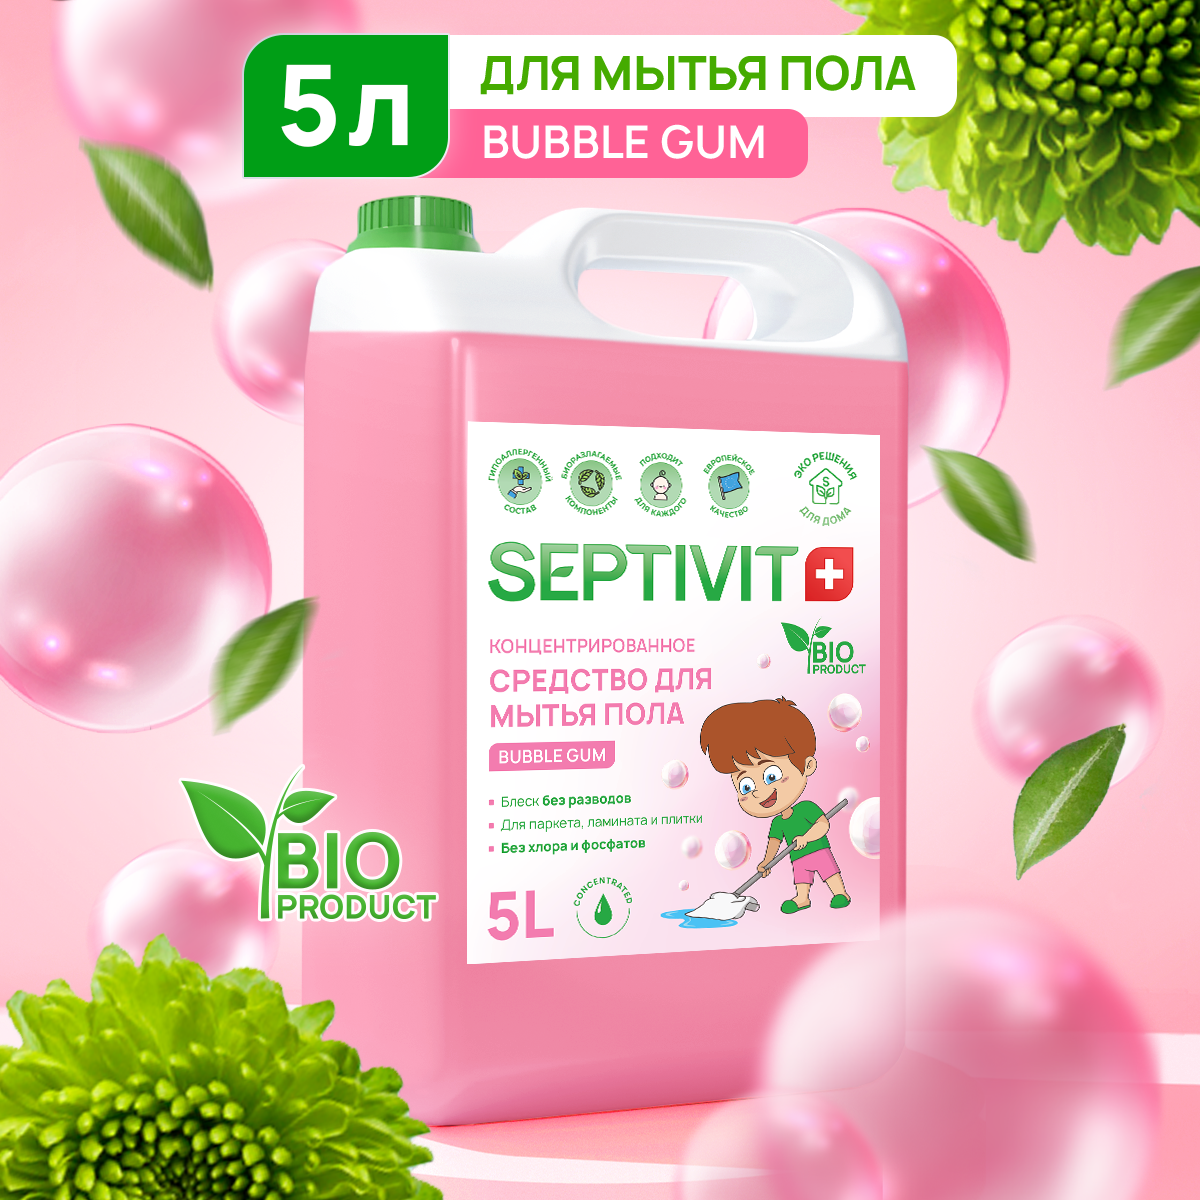 Средство для мытья пола SEPTIVIT Premium Bubble Gum 5л - фото 1